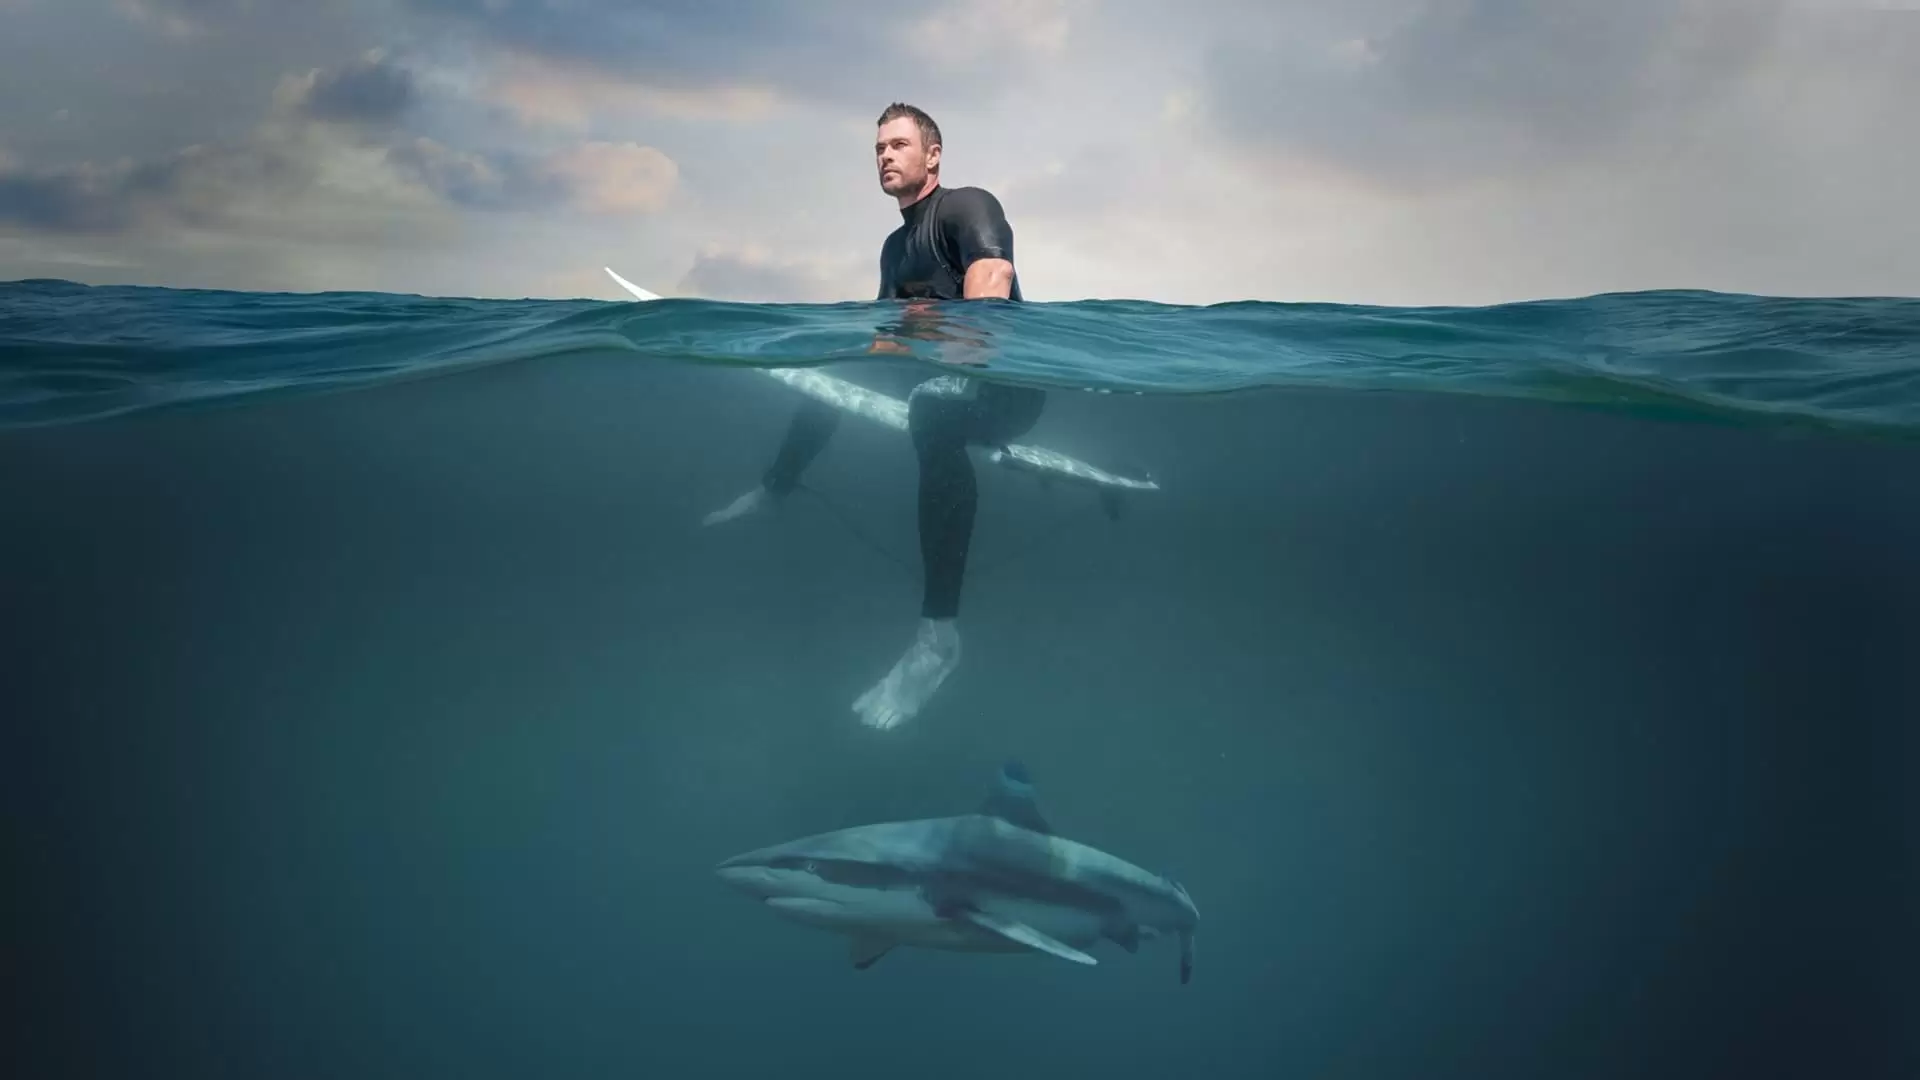 دانلود مستند Shark Beach with Chris Hemsworth 2021 (ساحل کوسه در کنار کریس همسورث) با تماشای آنلاین